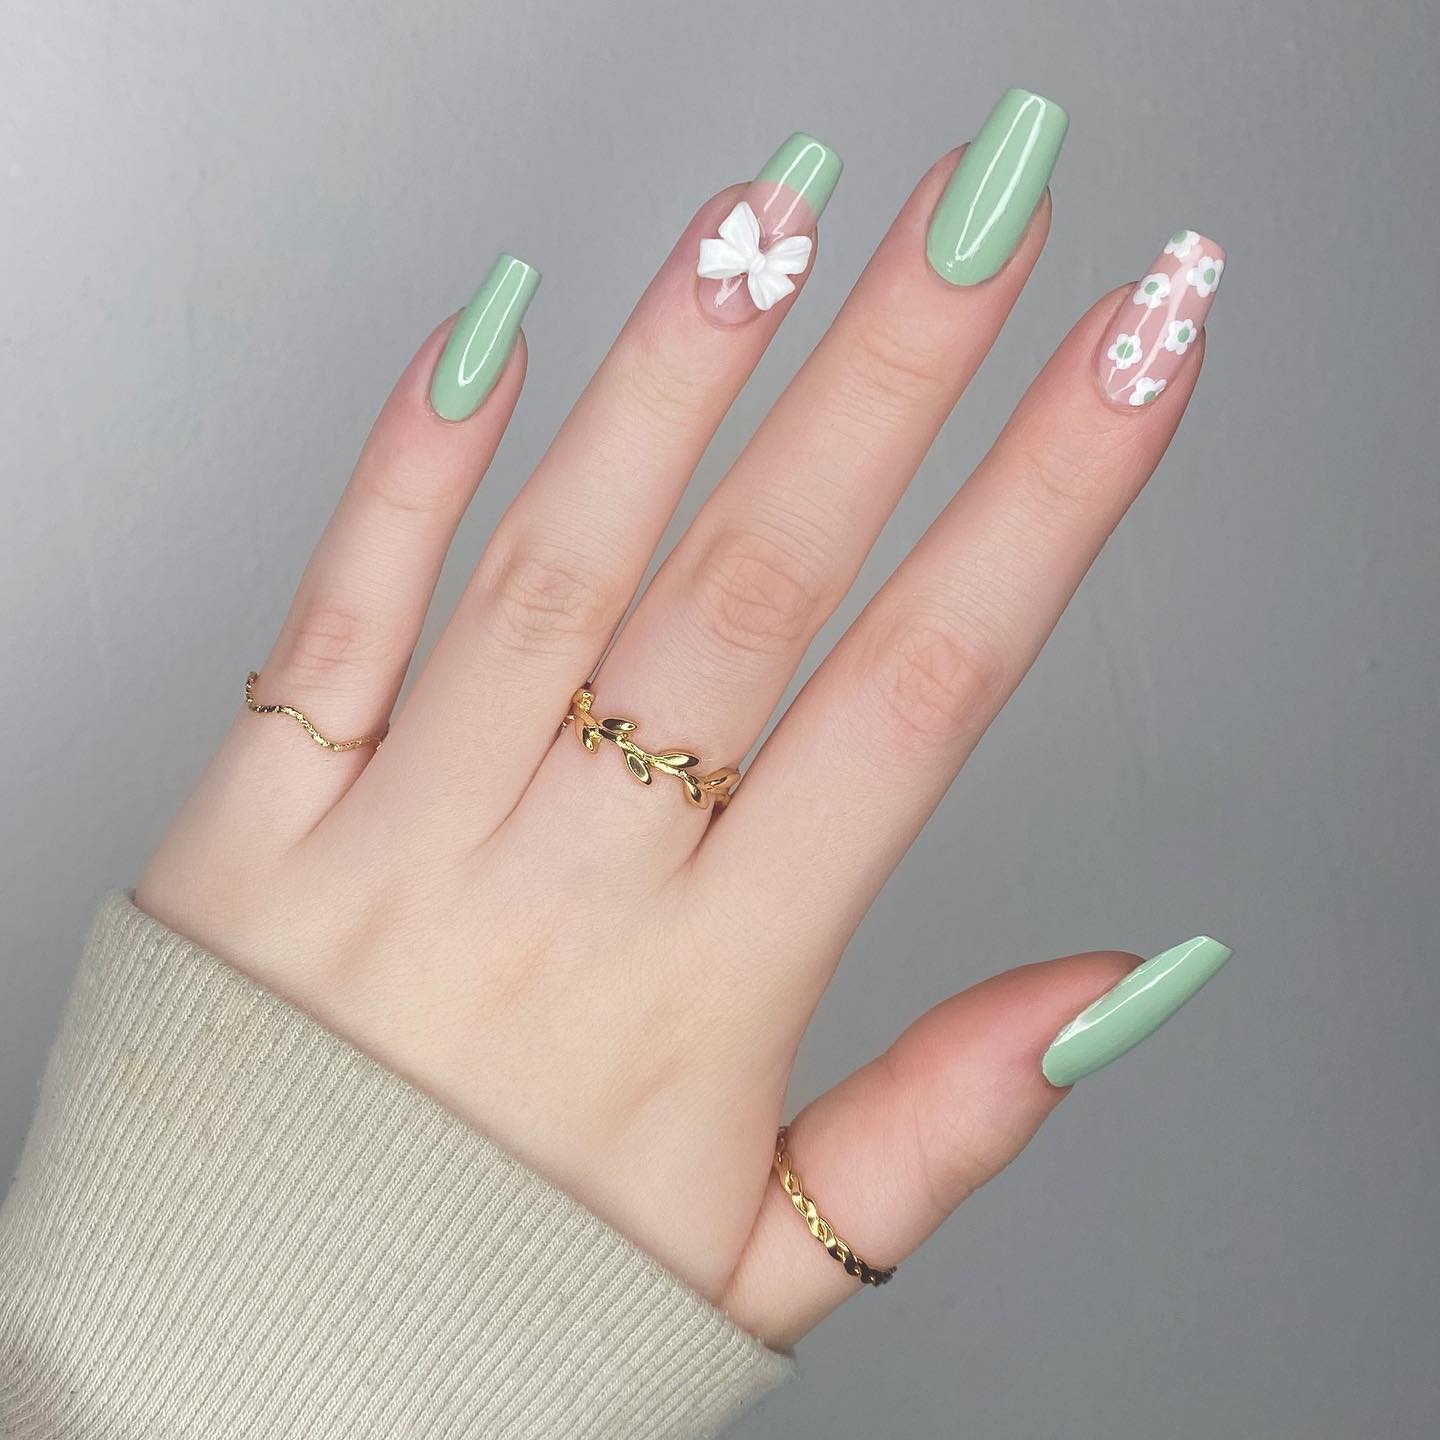 Eine Nahaufnahme salbeigrüner Nägel mit French-Tip-Akzent, weißen Blumen und Applikationen